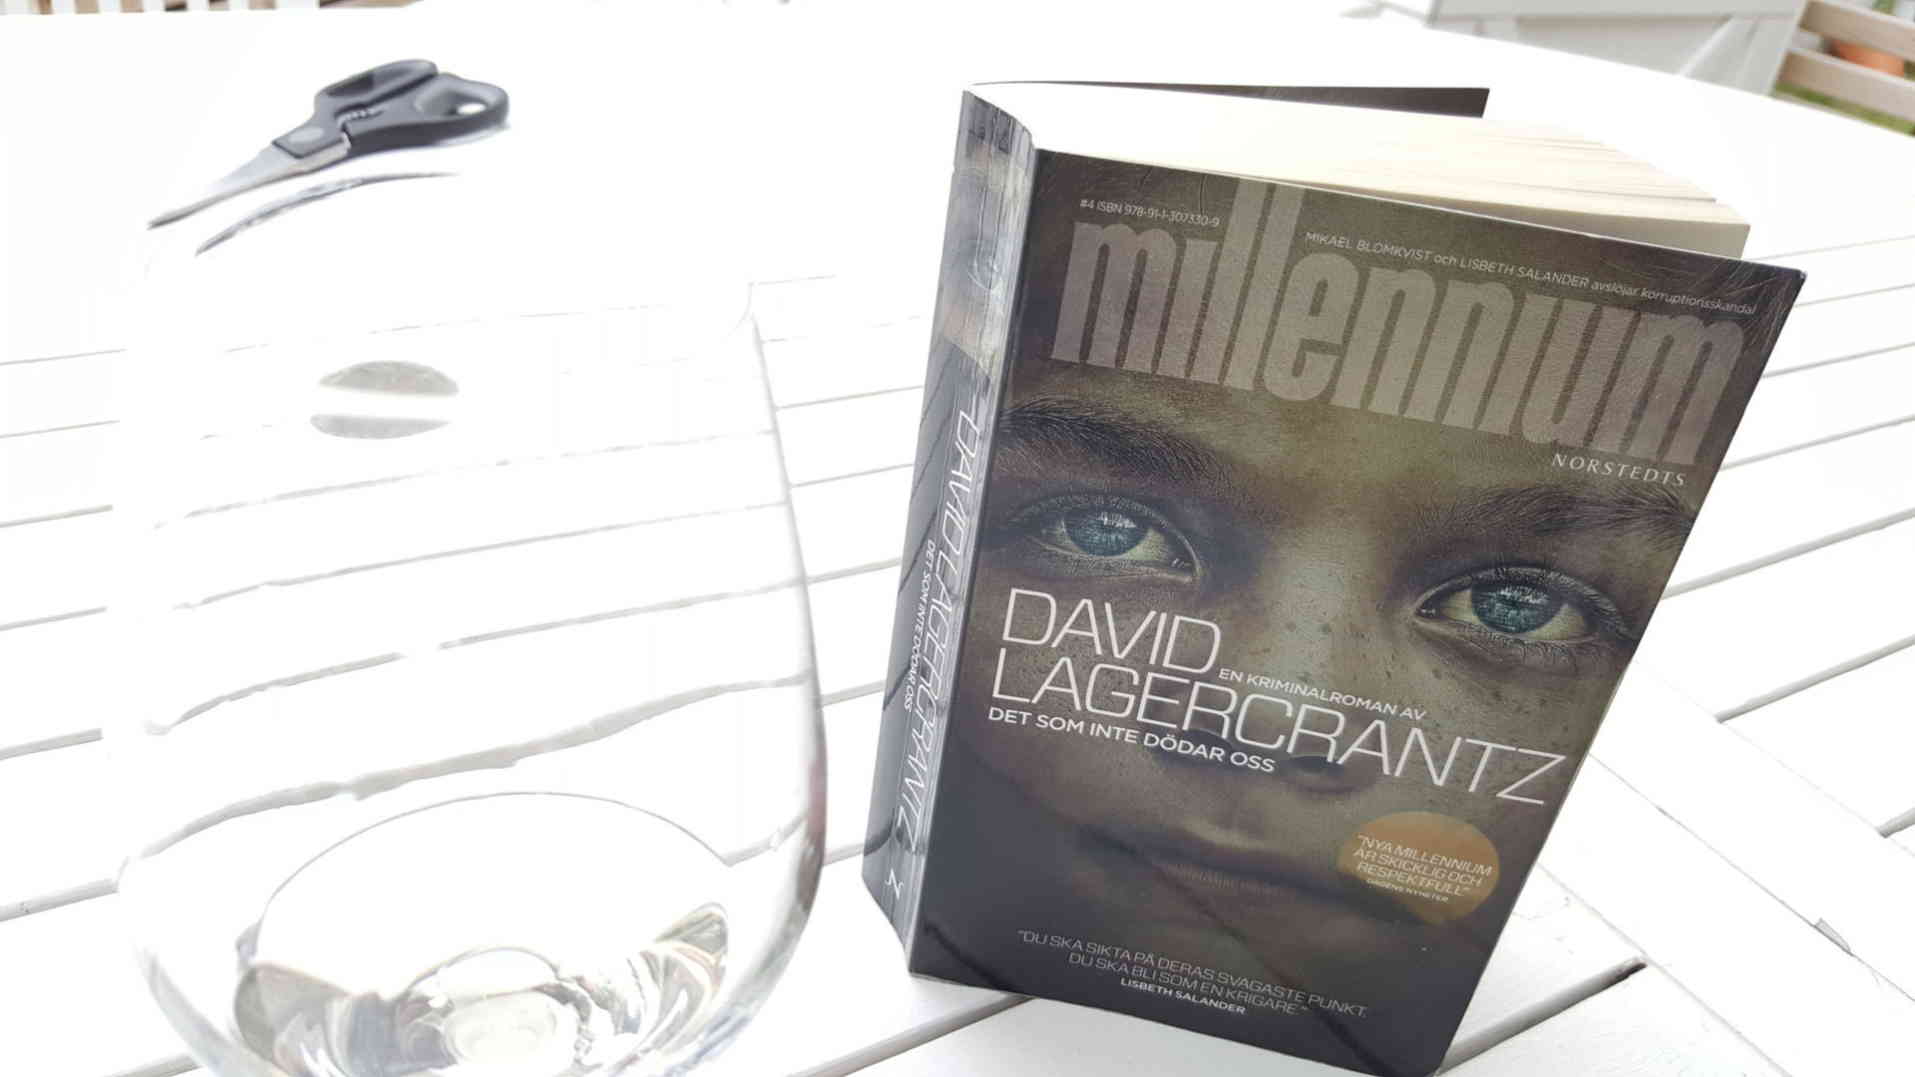 Millenium | Det som inte dödar oss, av David Lagercrantz